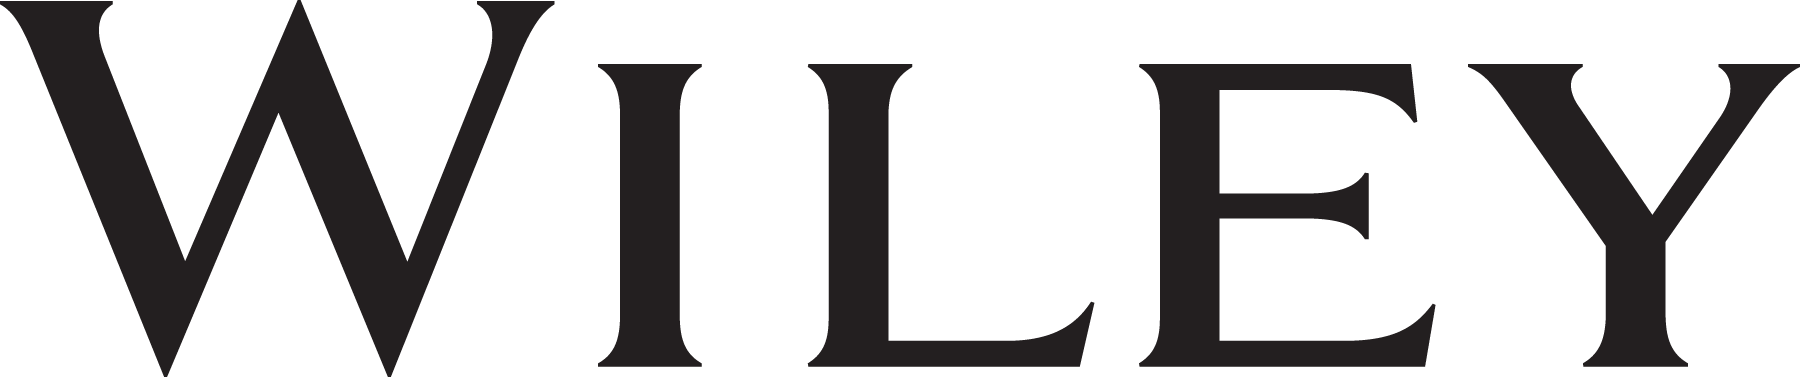 Wiley logo.